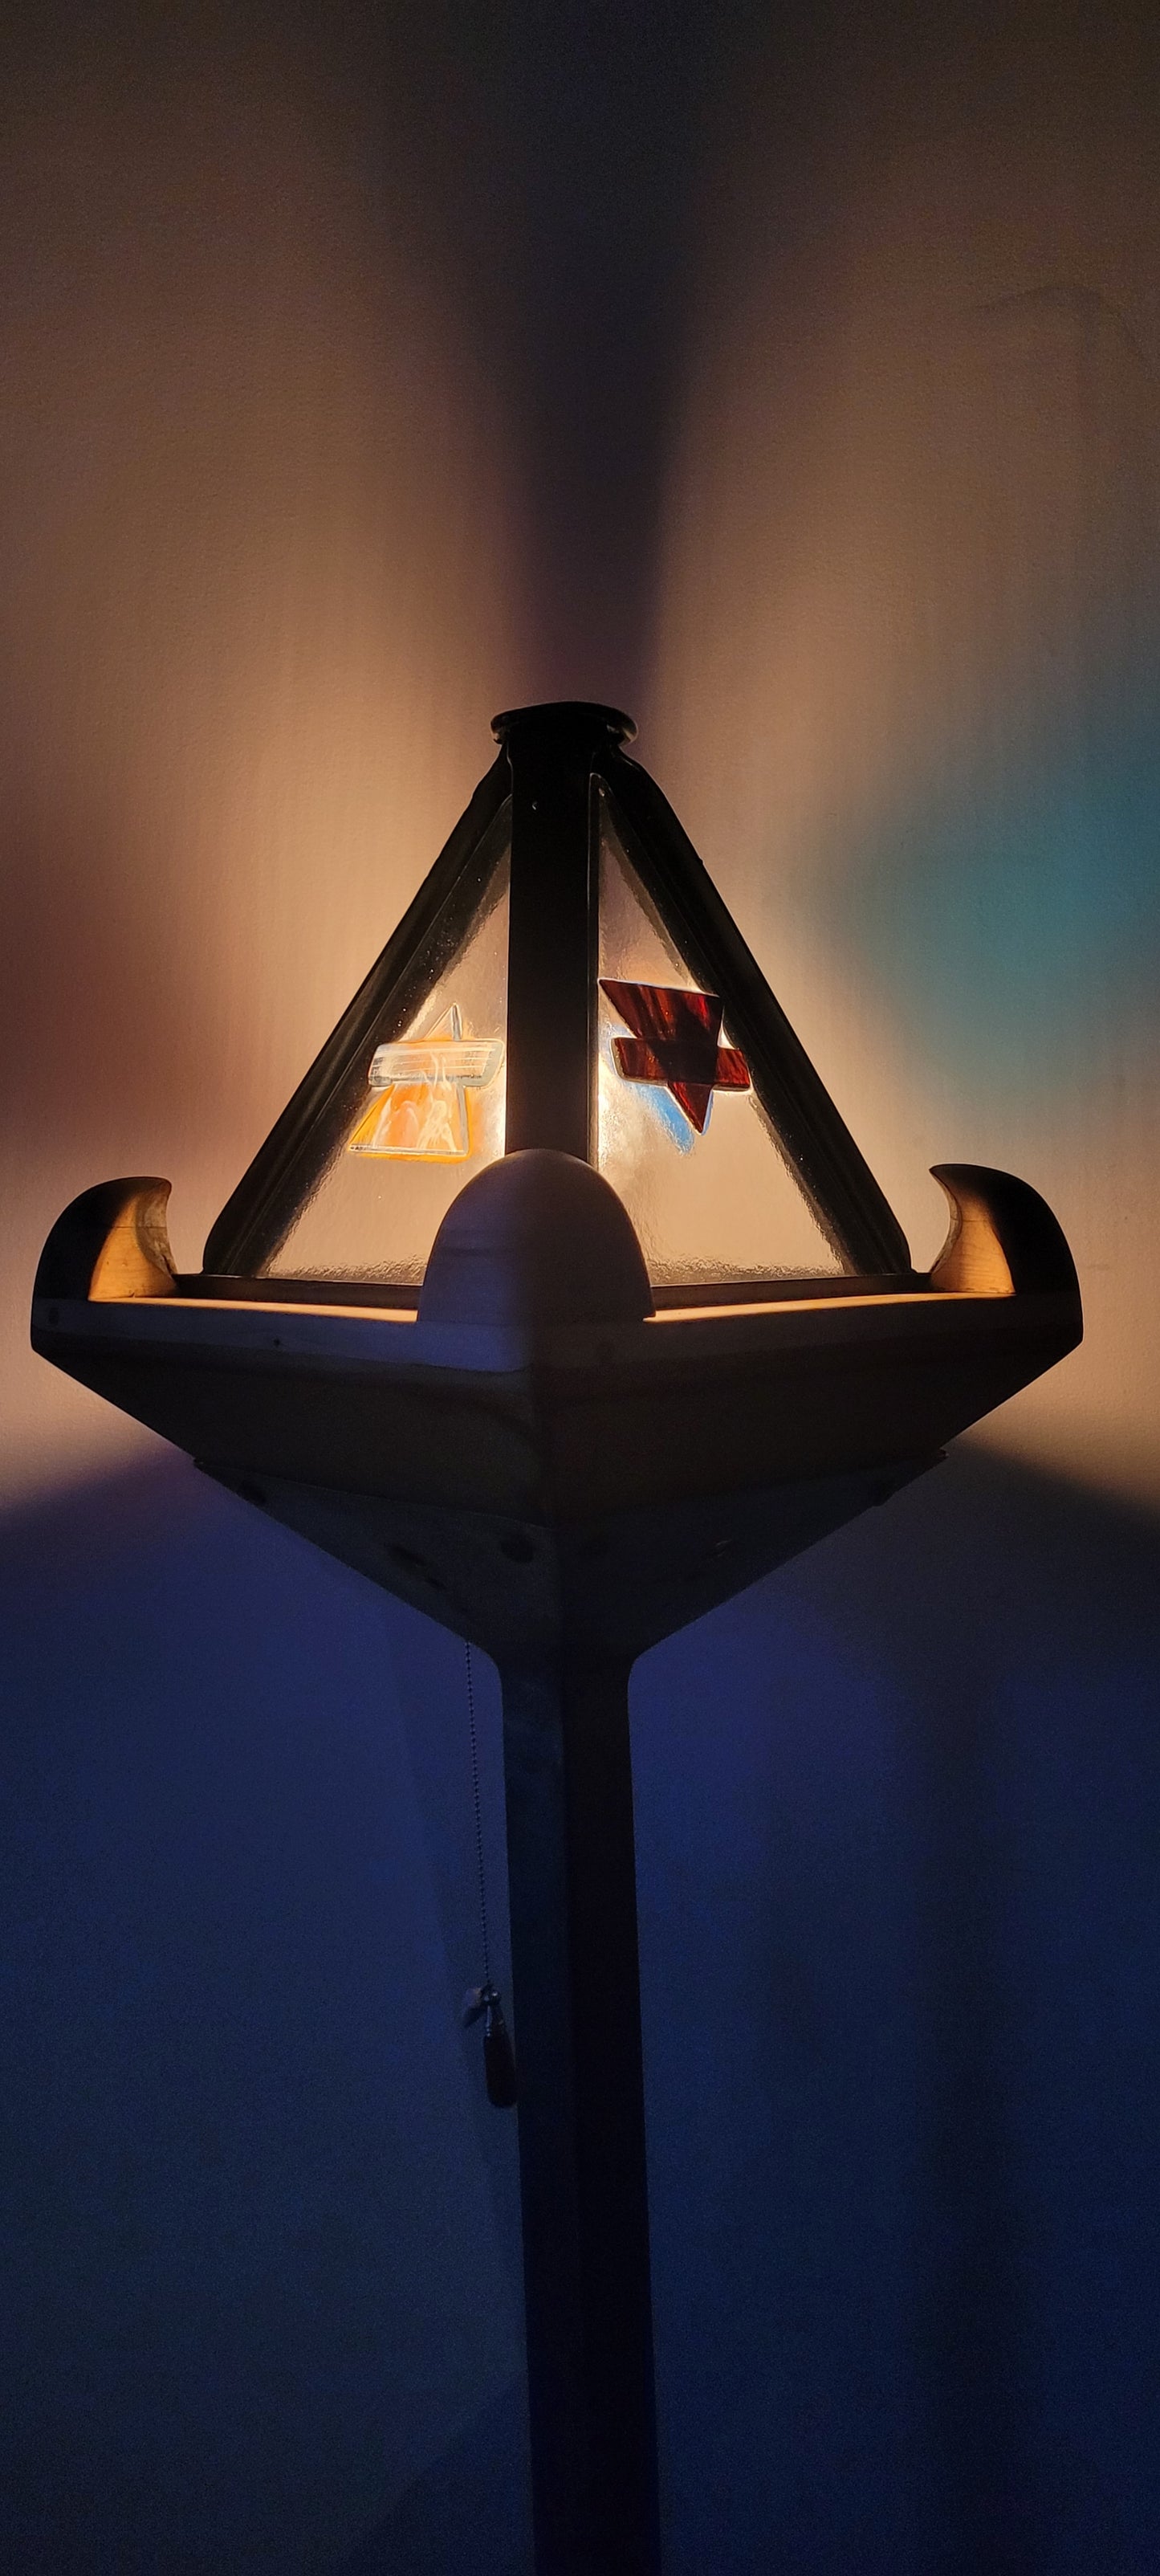 Lampe pyramidale sur pied des 4 éléments, acier, acier inox, verre fusionné, merisier, géometrique, industrielle, nature